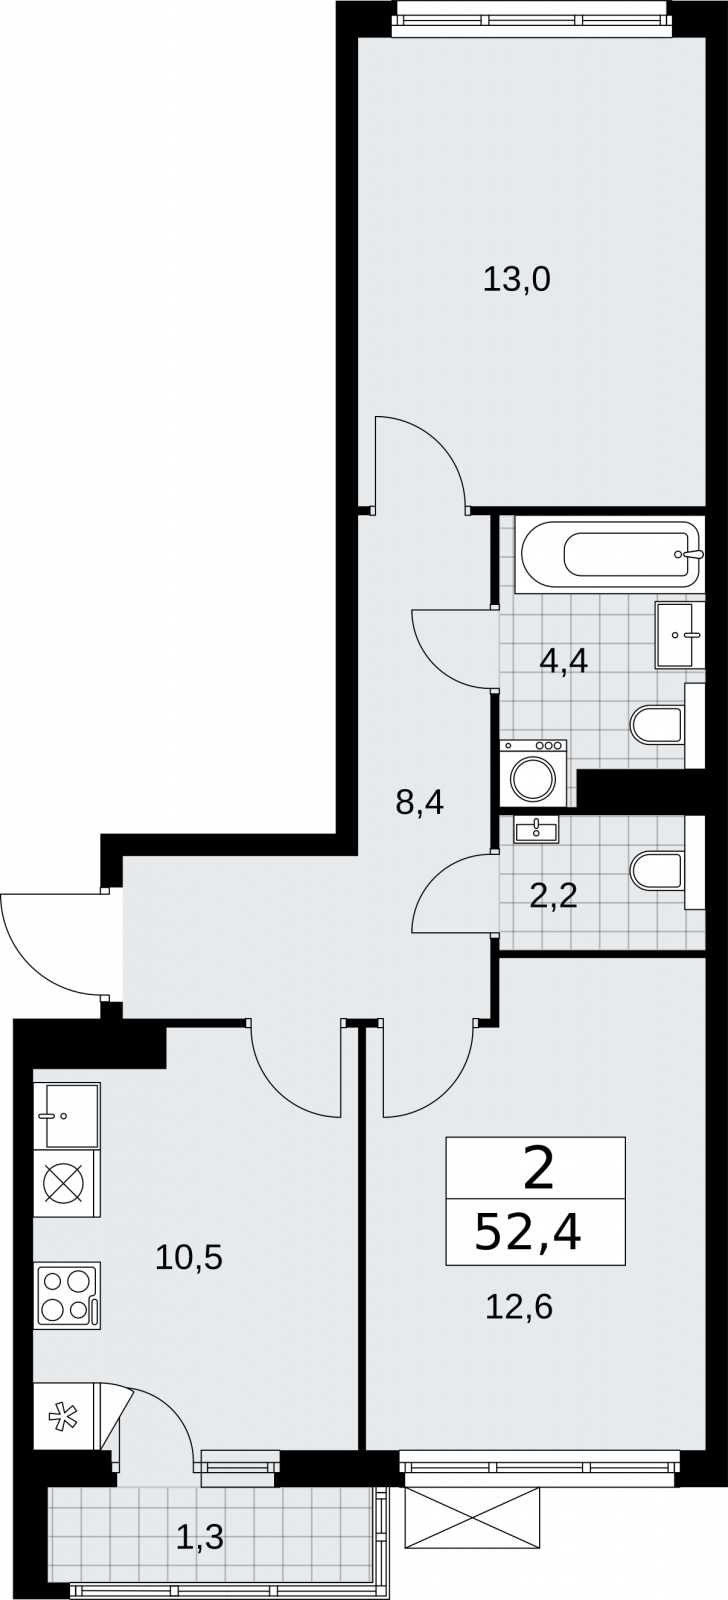 2-комнатная квартира в новом жилом комплексе, у метро